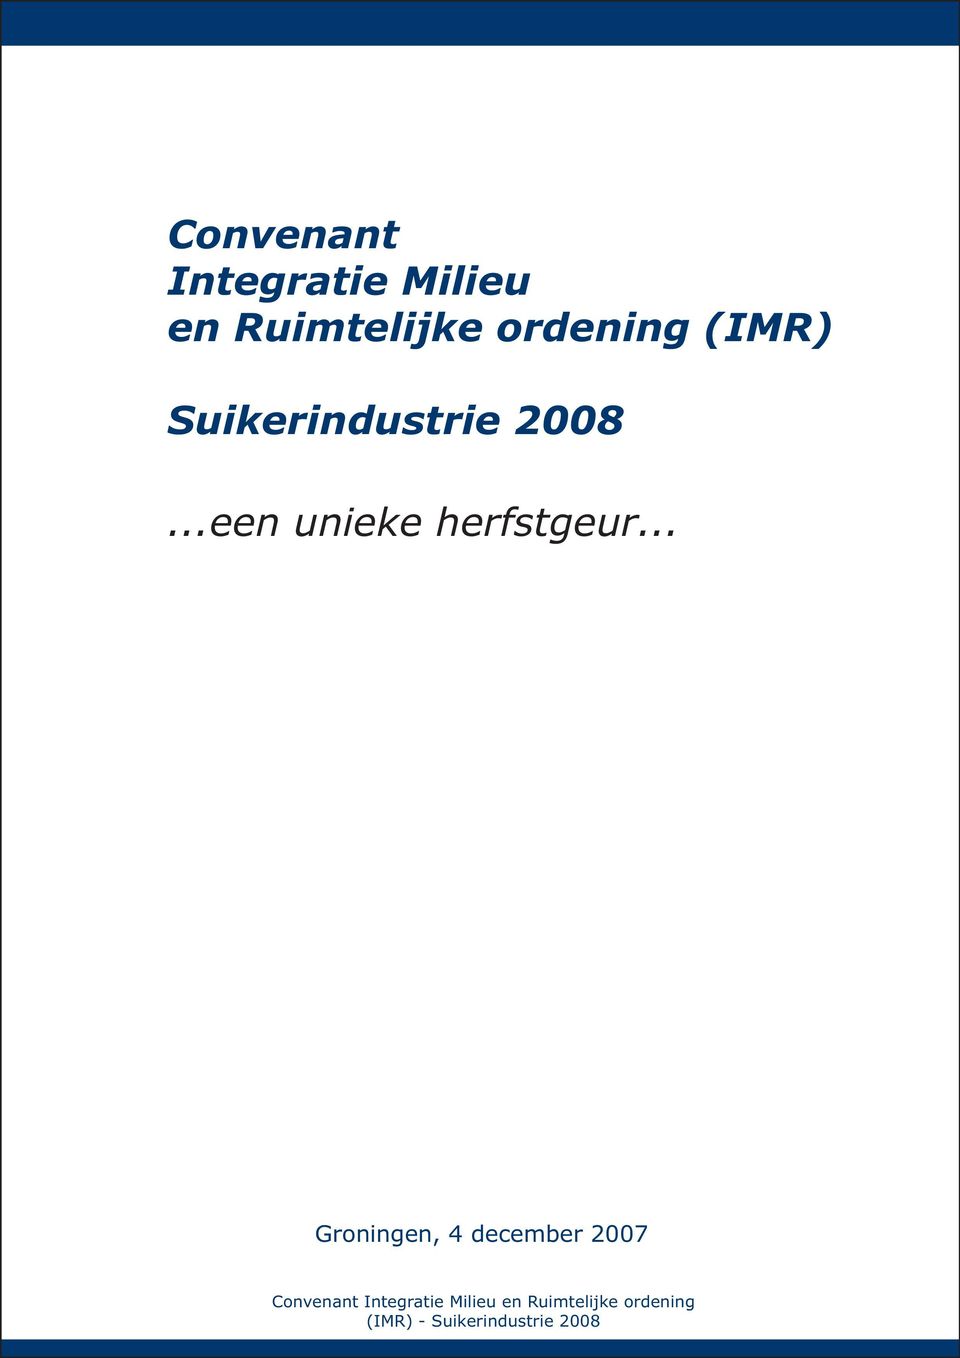 Suikerindustrie 2008.